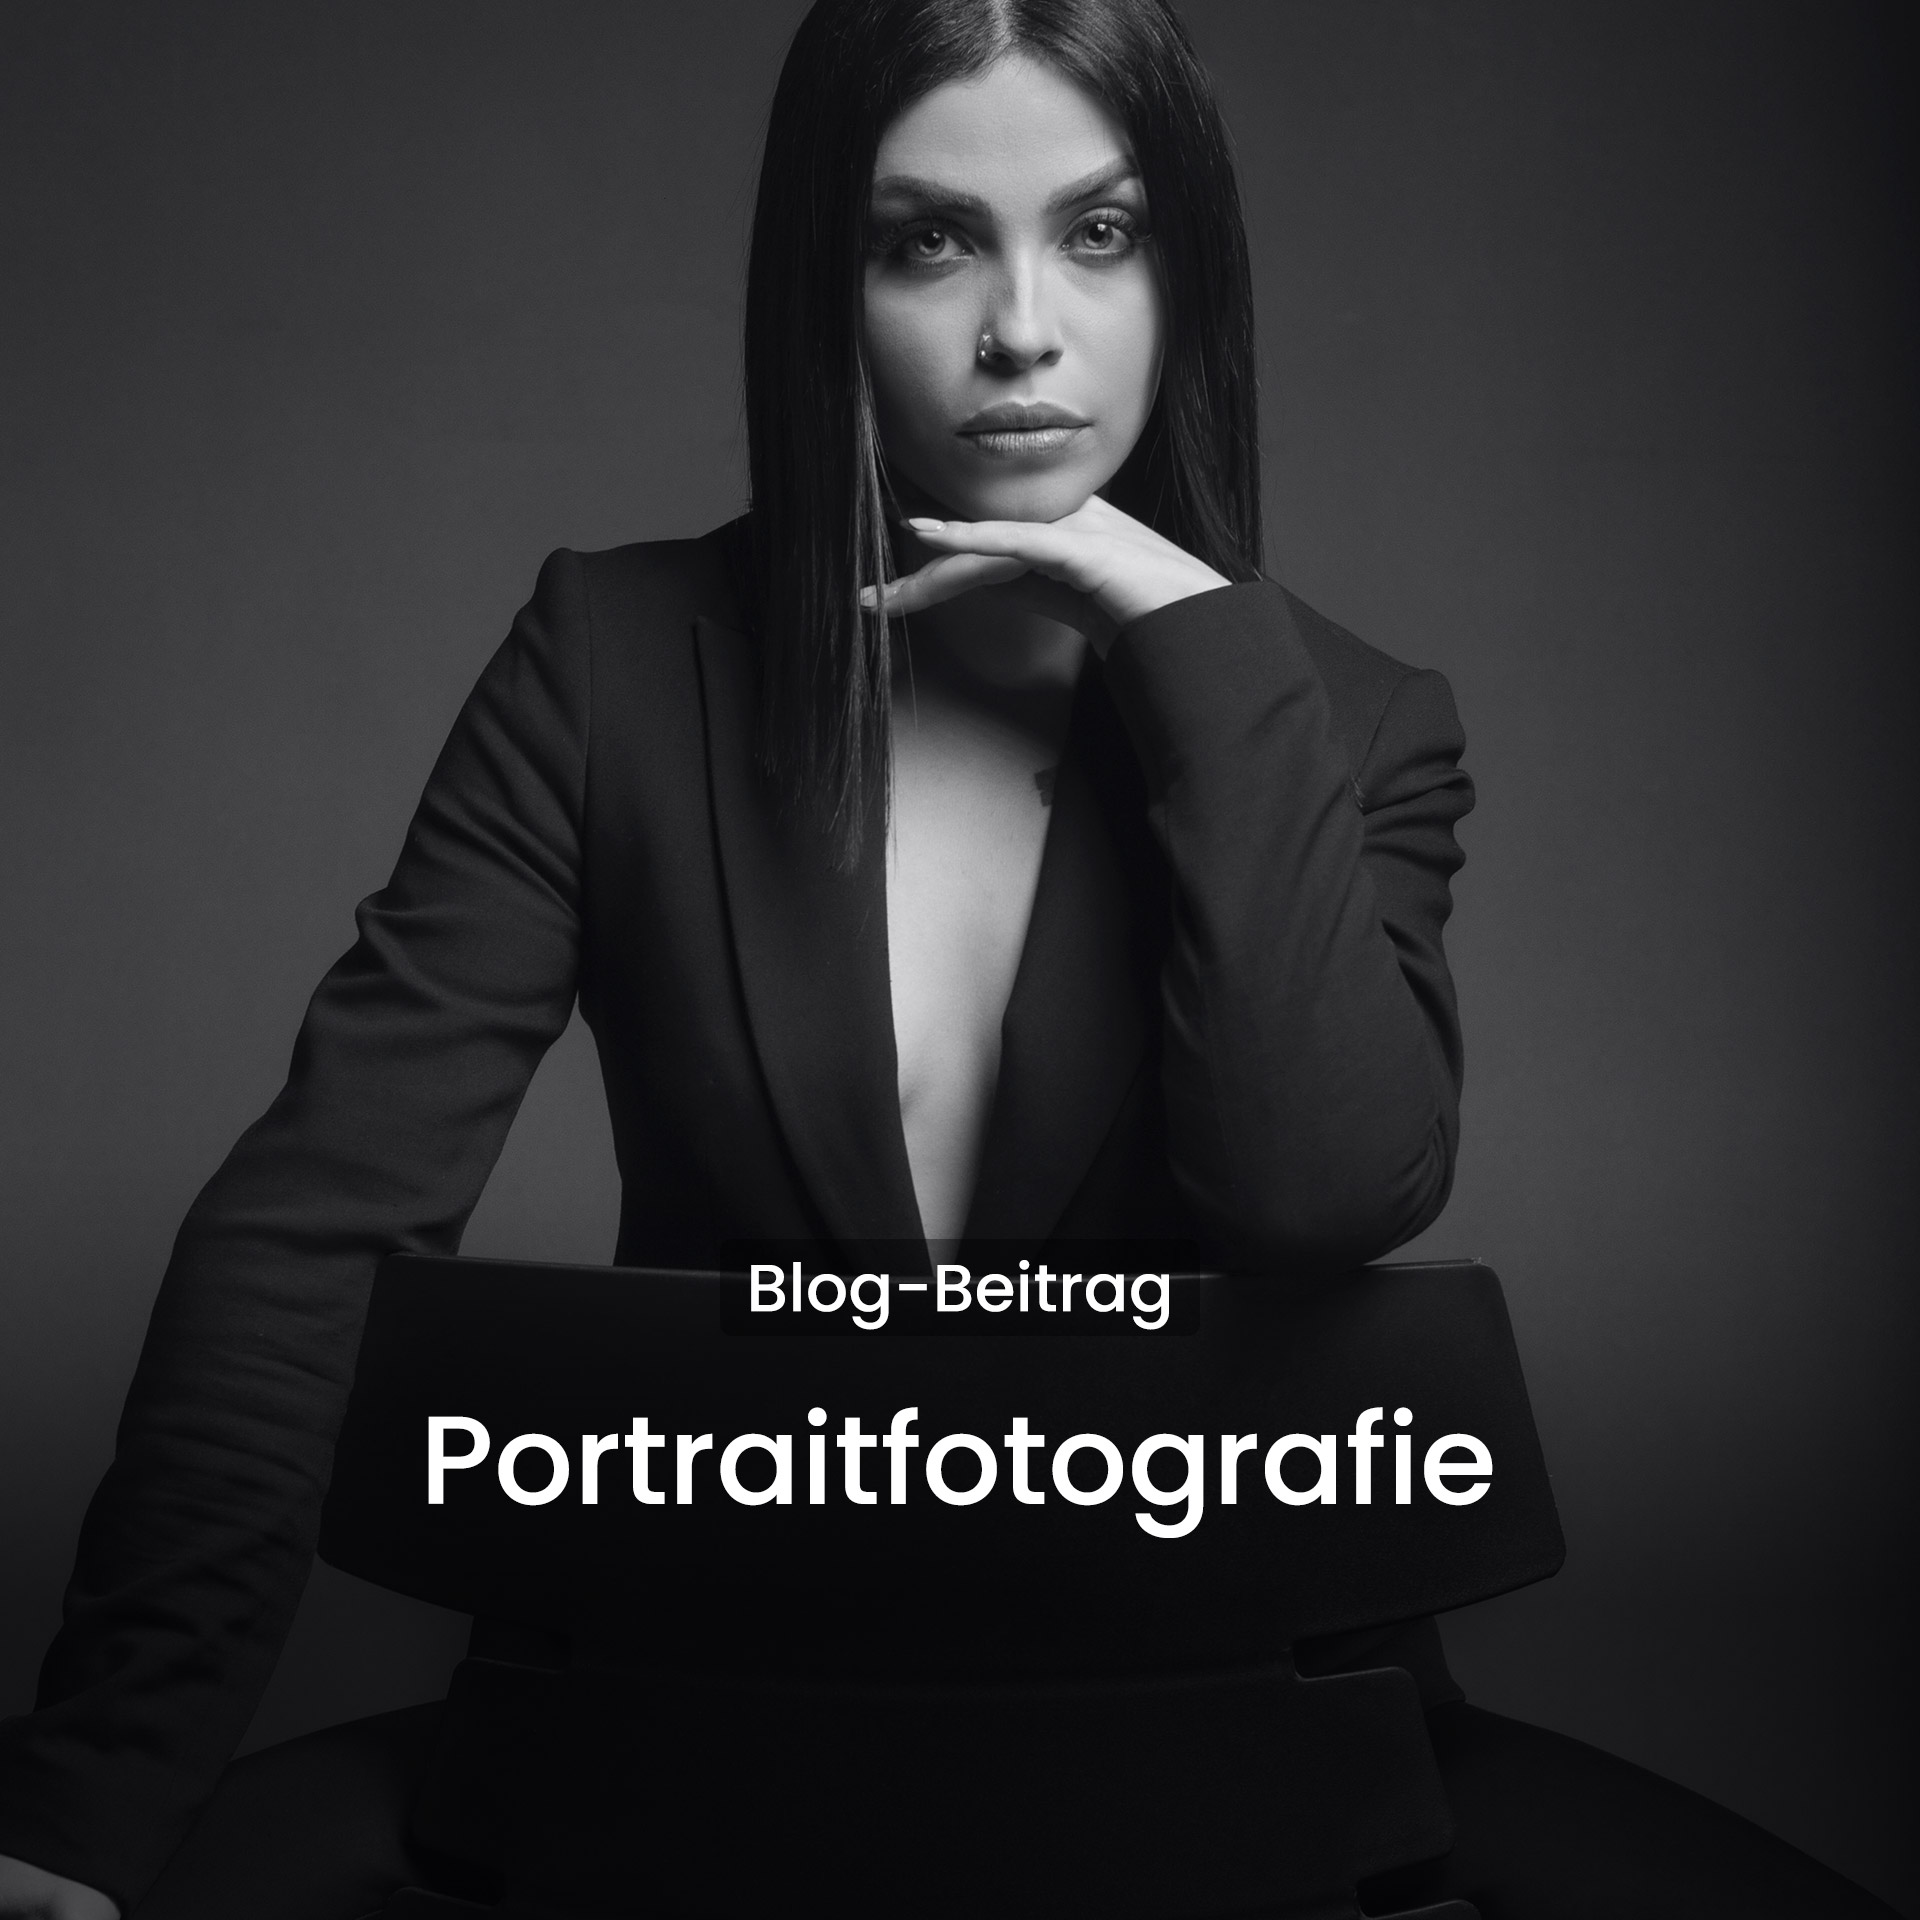 Portraitfotografie: Von der Kunst, die Persönlichkeit zu fotografieren